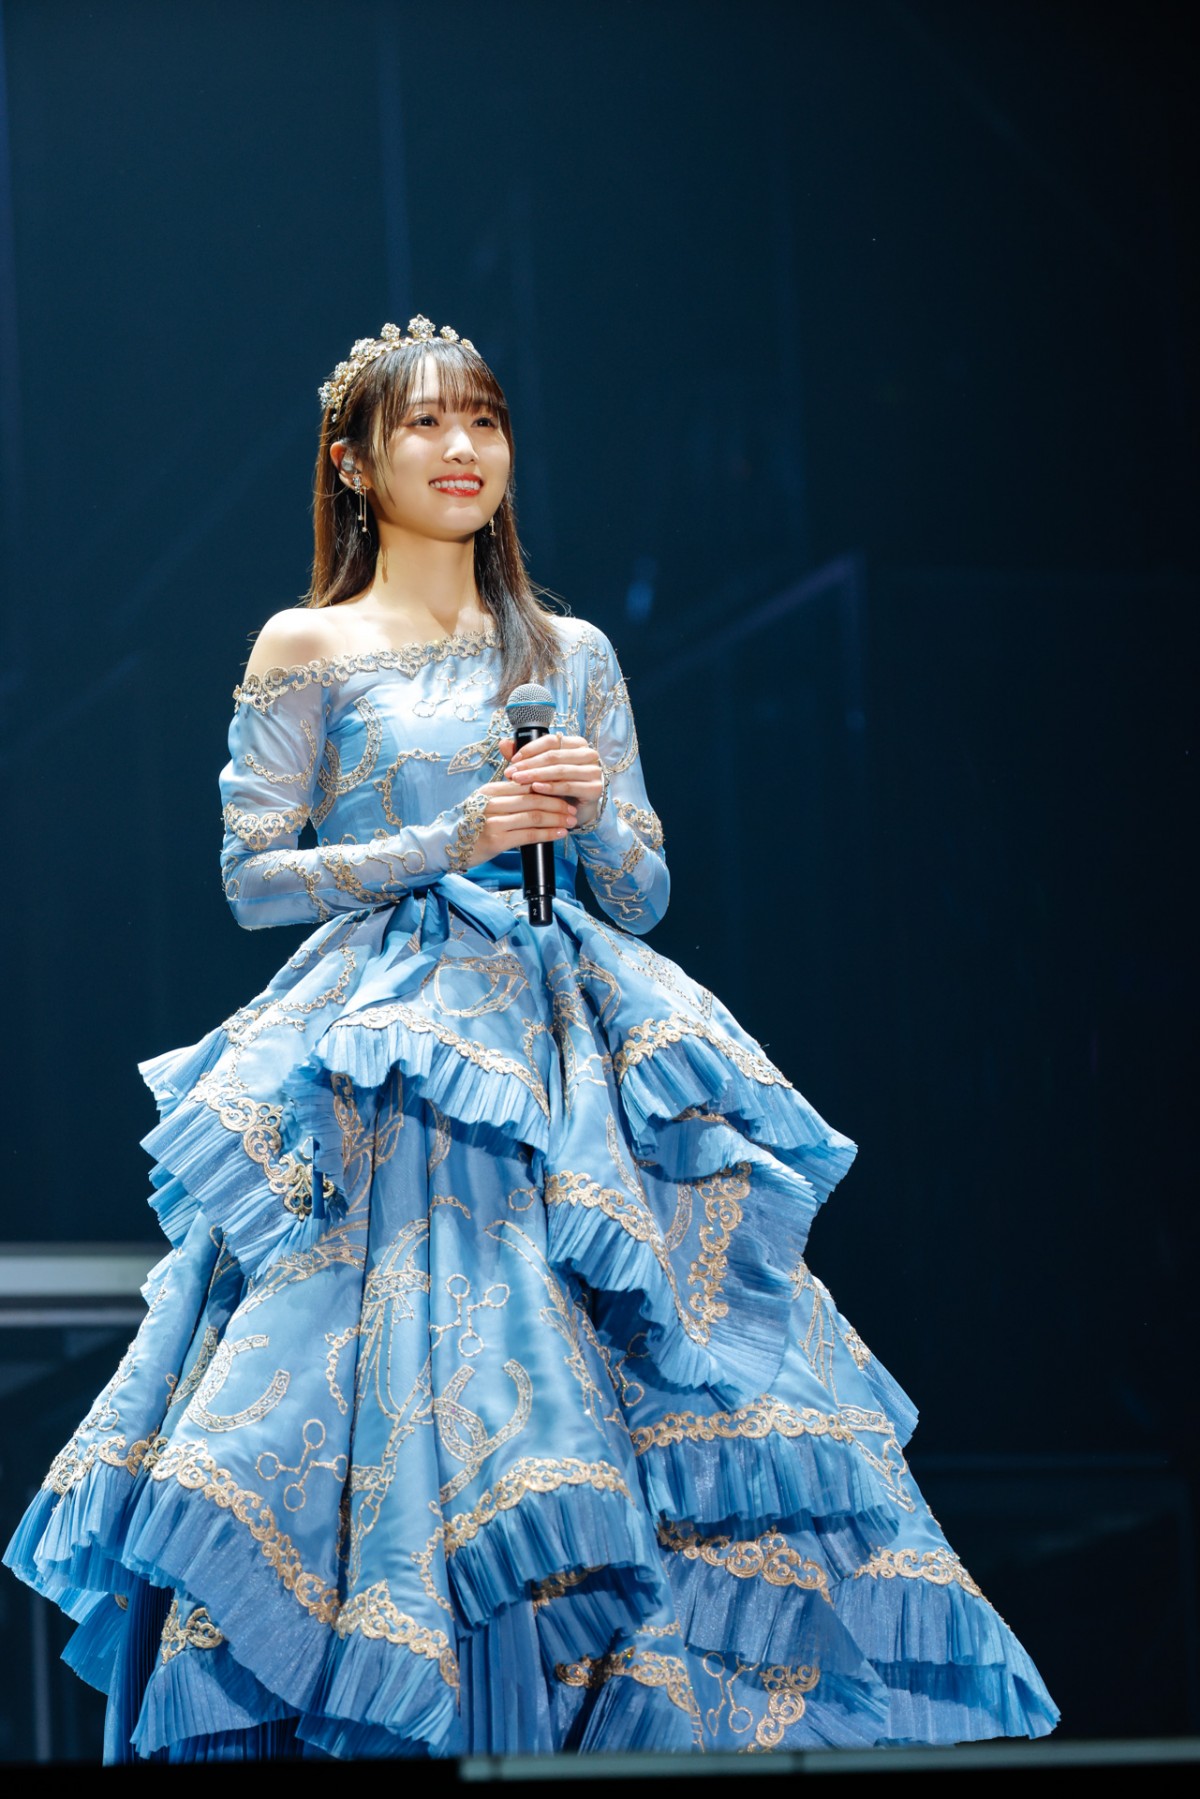 櫻坂46キャプテン・菅井友香が東京ドーム公演で卒業　ラストは笑顔で「がんばりき」